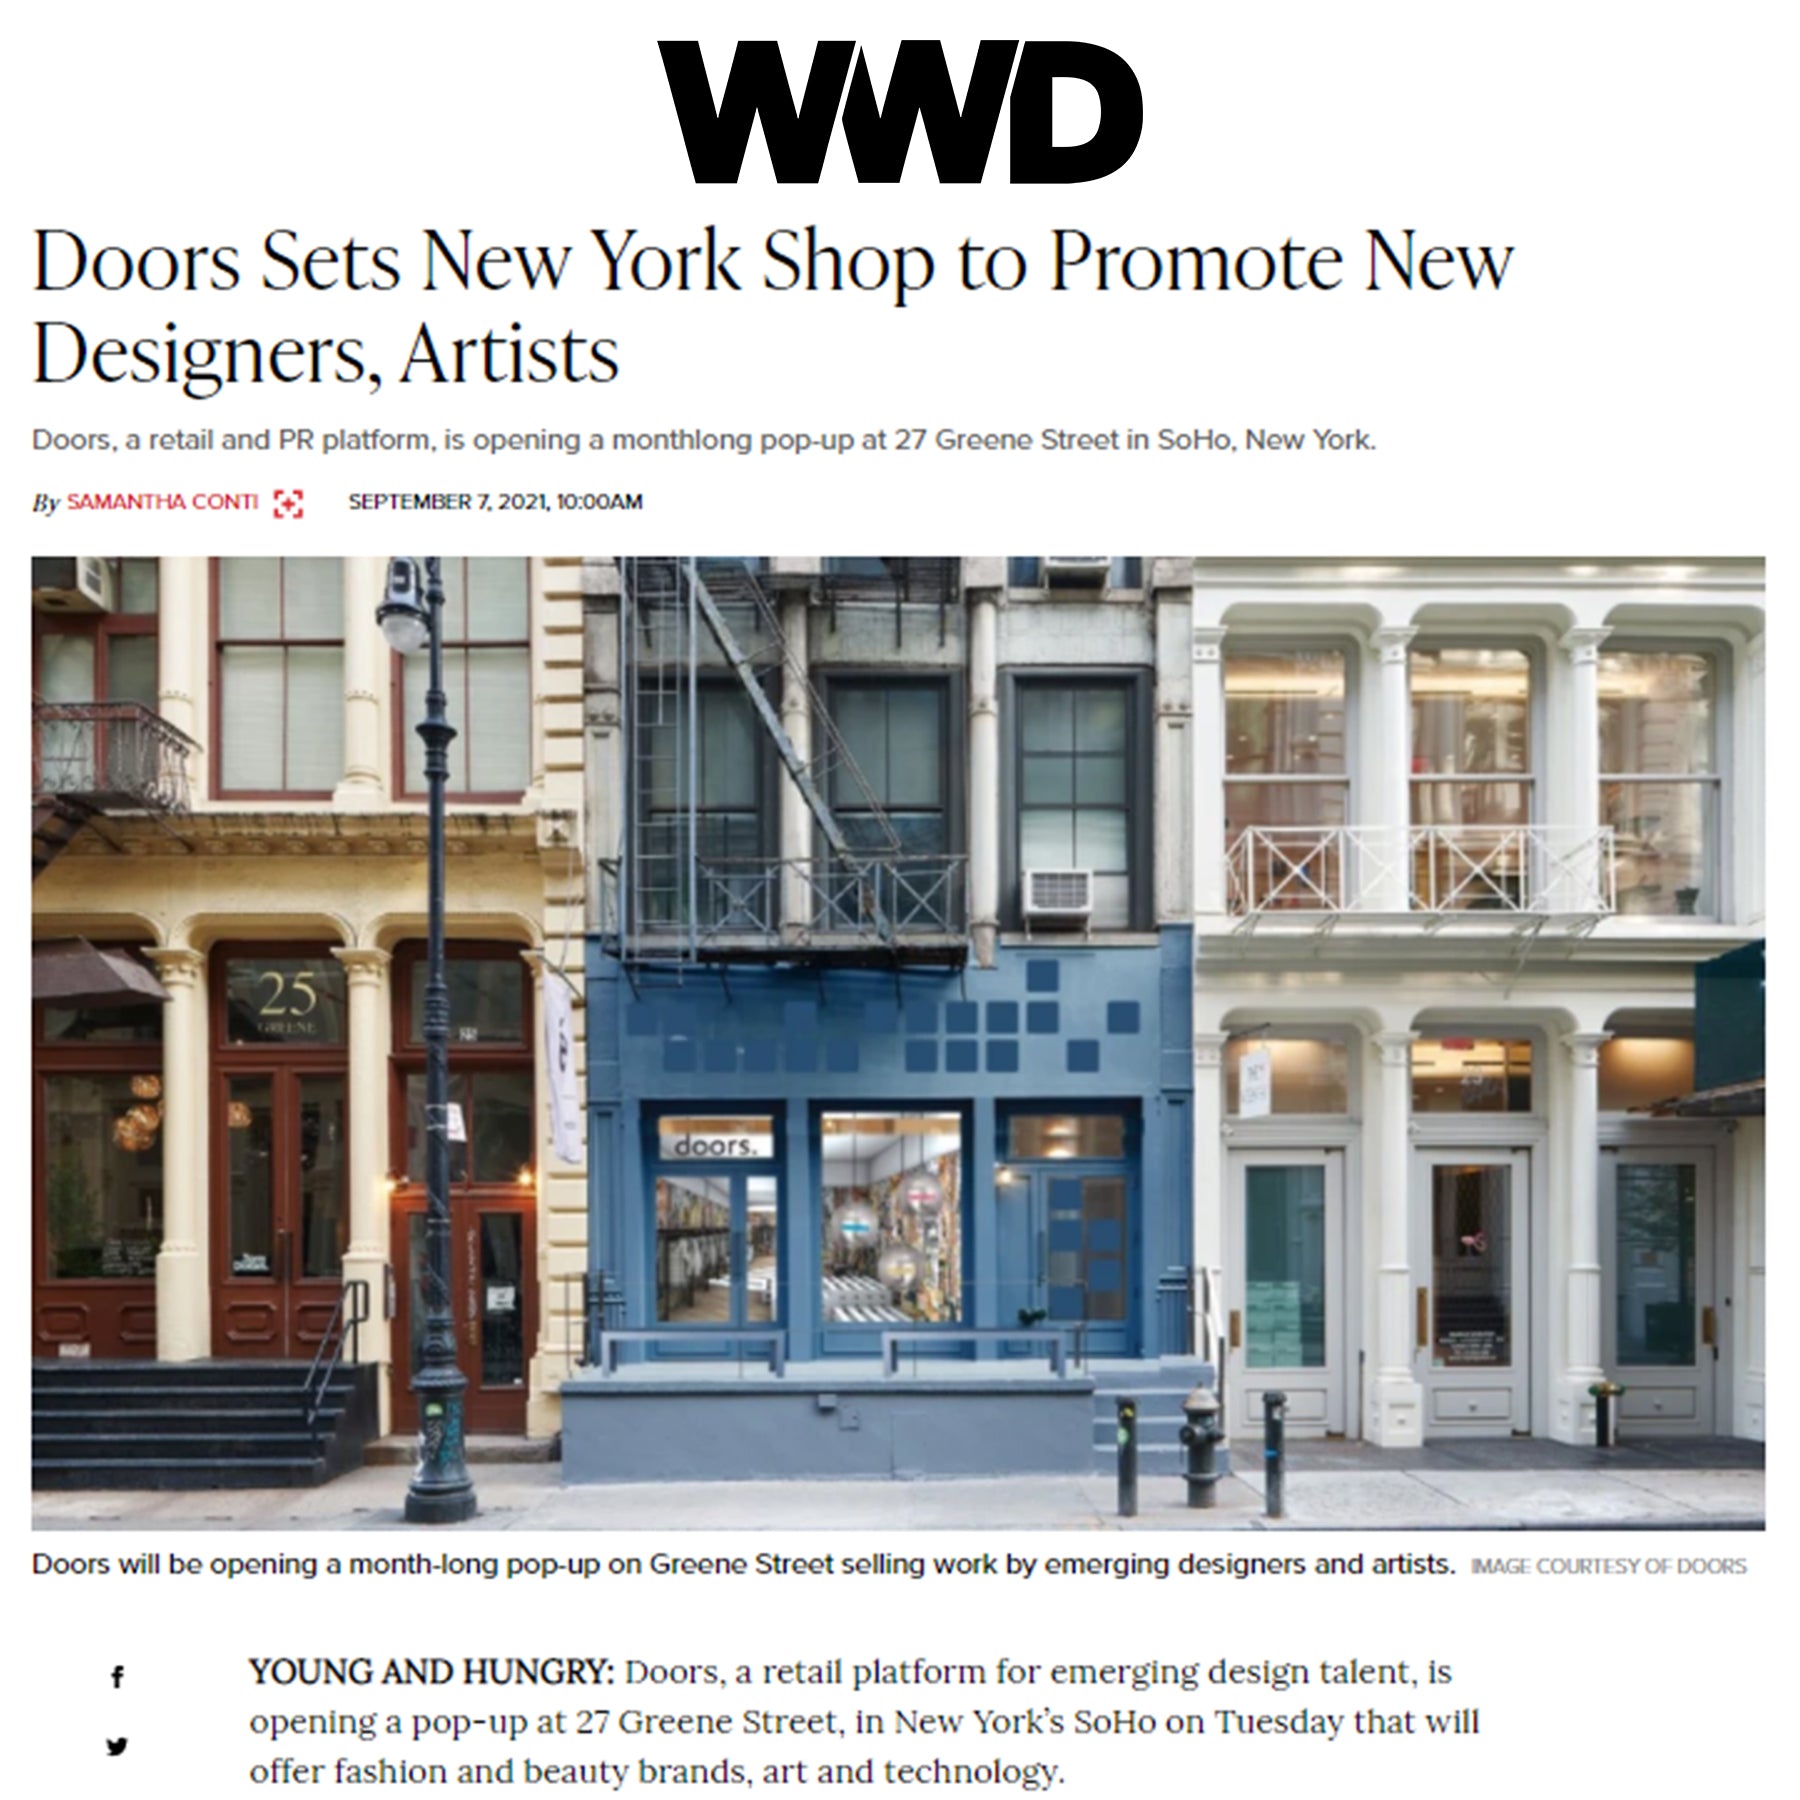 Doors Sets New York Shop to Promote New Designers, Artists - doors in WWD